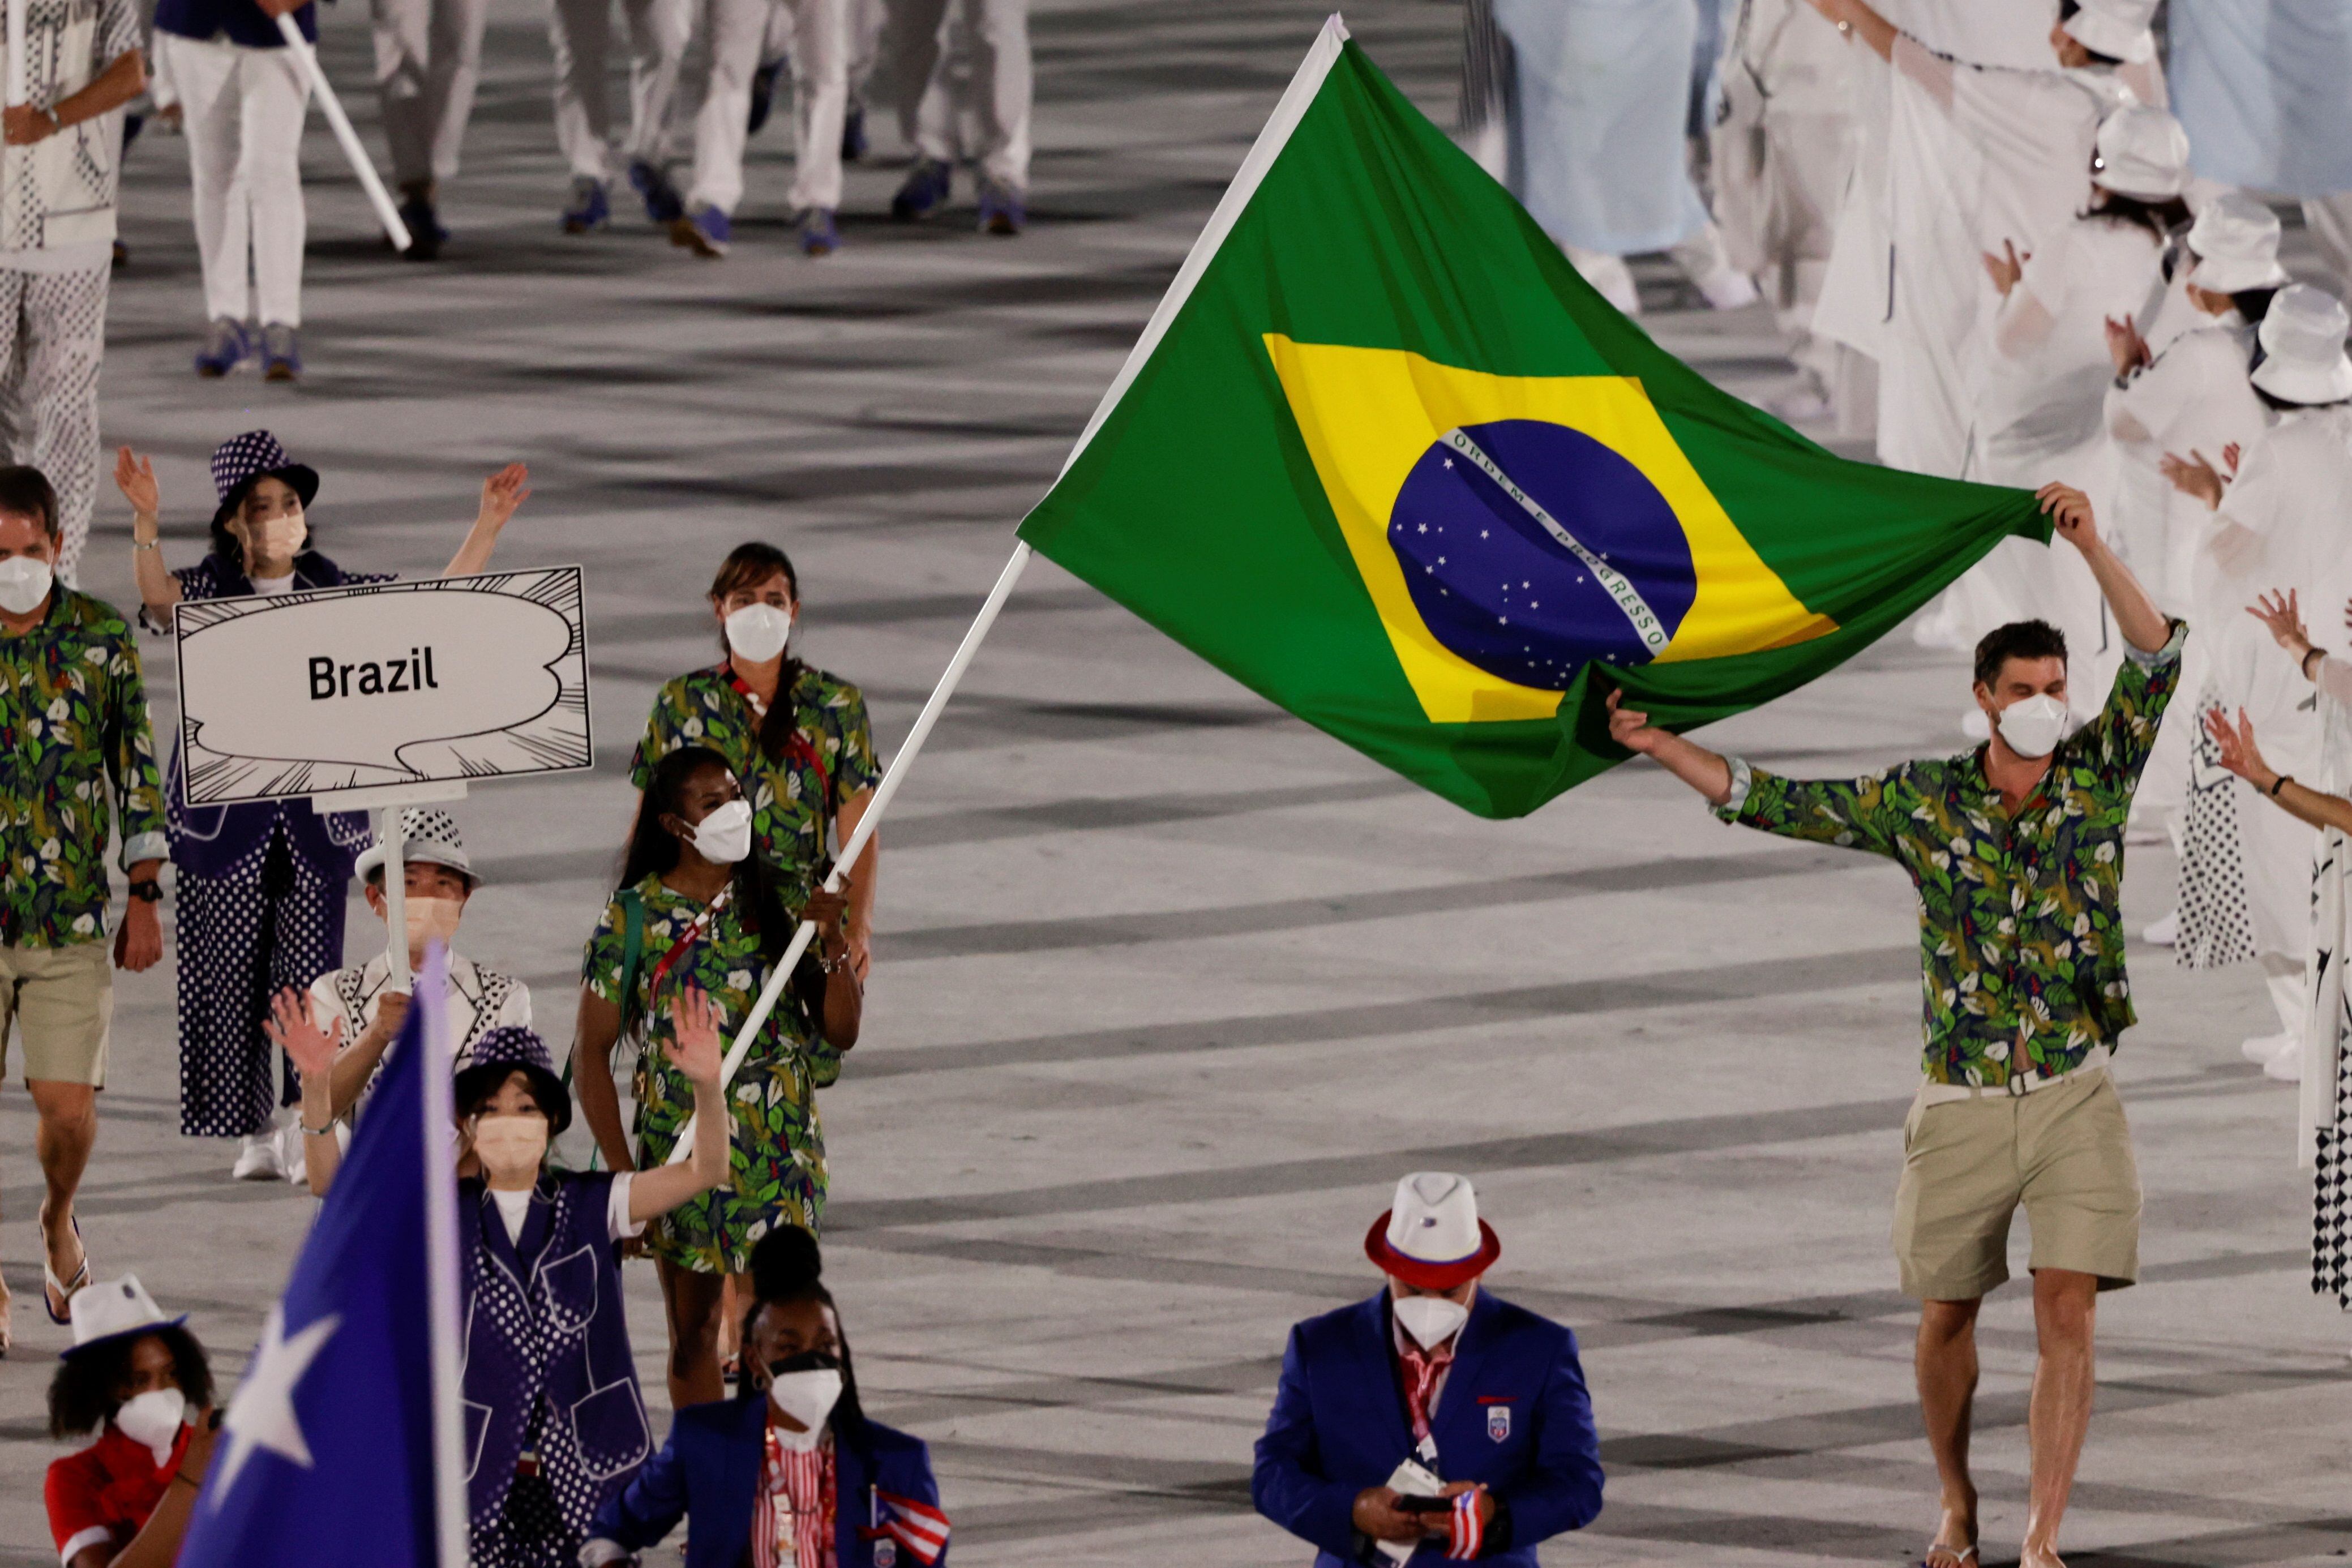 Os porta-bandeiras do Brasil na cerimônia foram Bruno Resende, do vôlei masculino, e Ketleyn Quadros, do judô, que entraram ao lado de dois representantes do COB. 